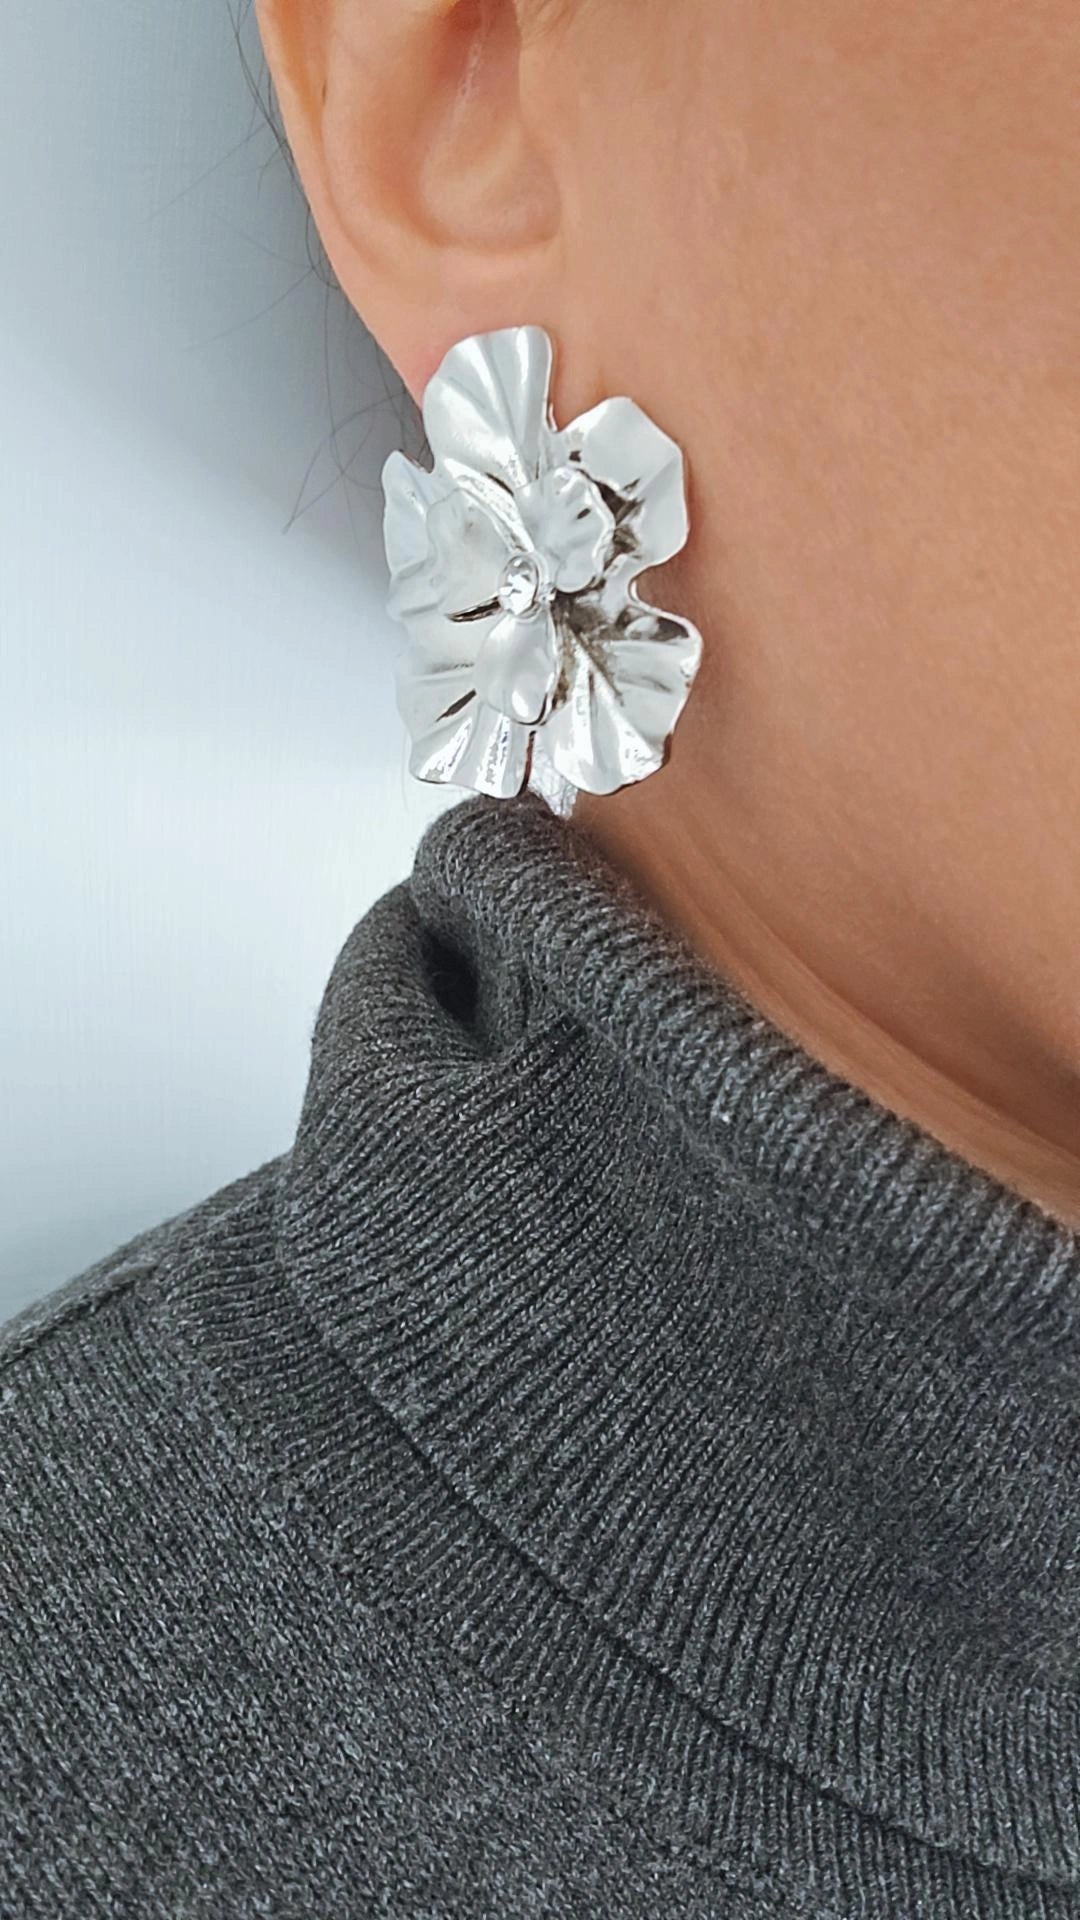 Earrings Flowers